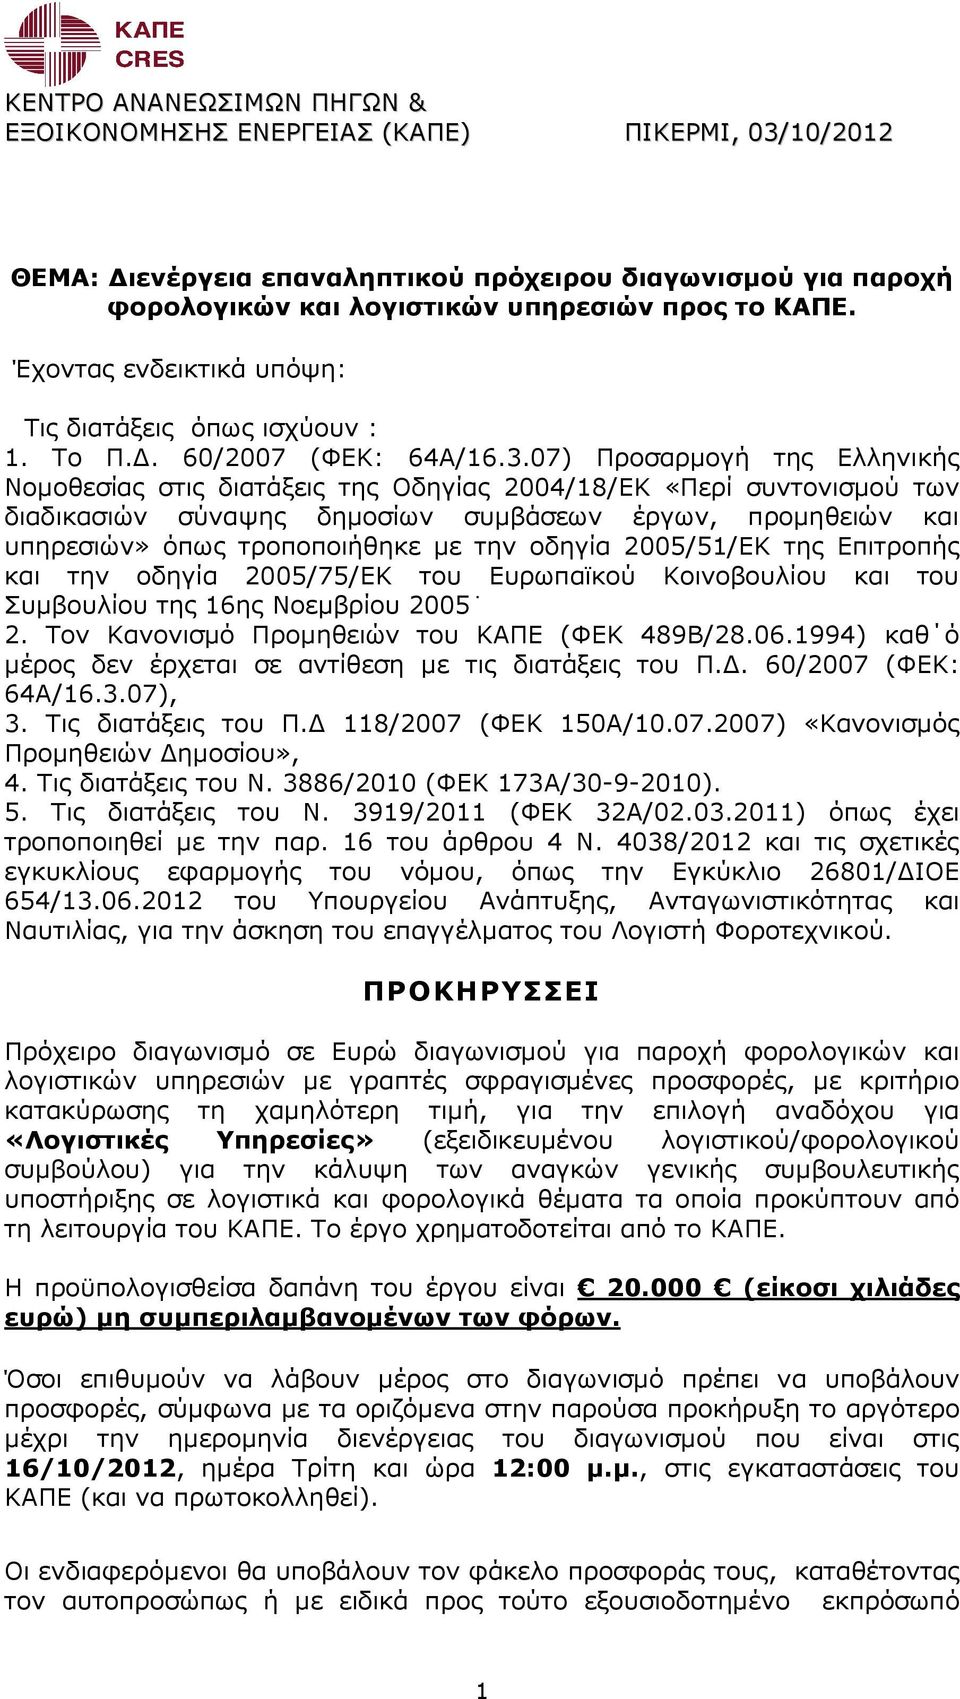 07) Προσαρµογή της Ελληνικής Νοµοθεσίας στις διατάξεις της Οδηγίας 2004/18/ΕΚ «Περί συντονισµού των διαδικασιών σύναψης δηµοσίων συµβάσεων έργων, προµηθειών και υπηρεσιών» όπως τροποποιήθηκε µε την